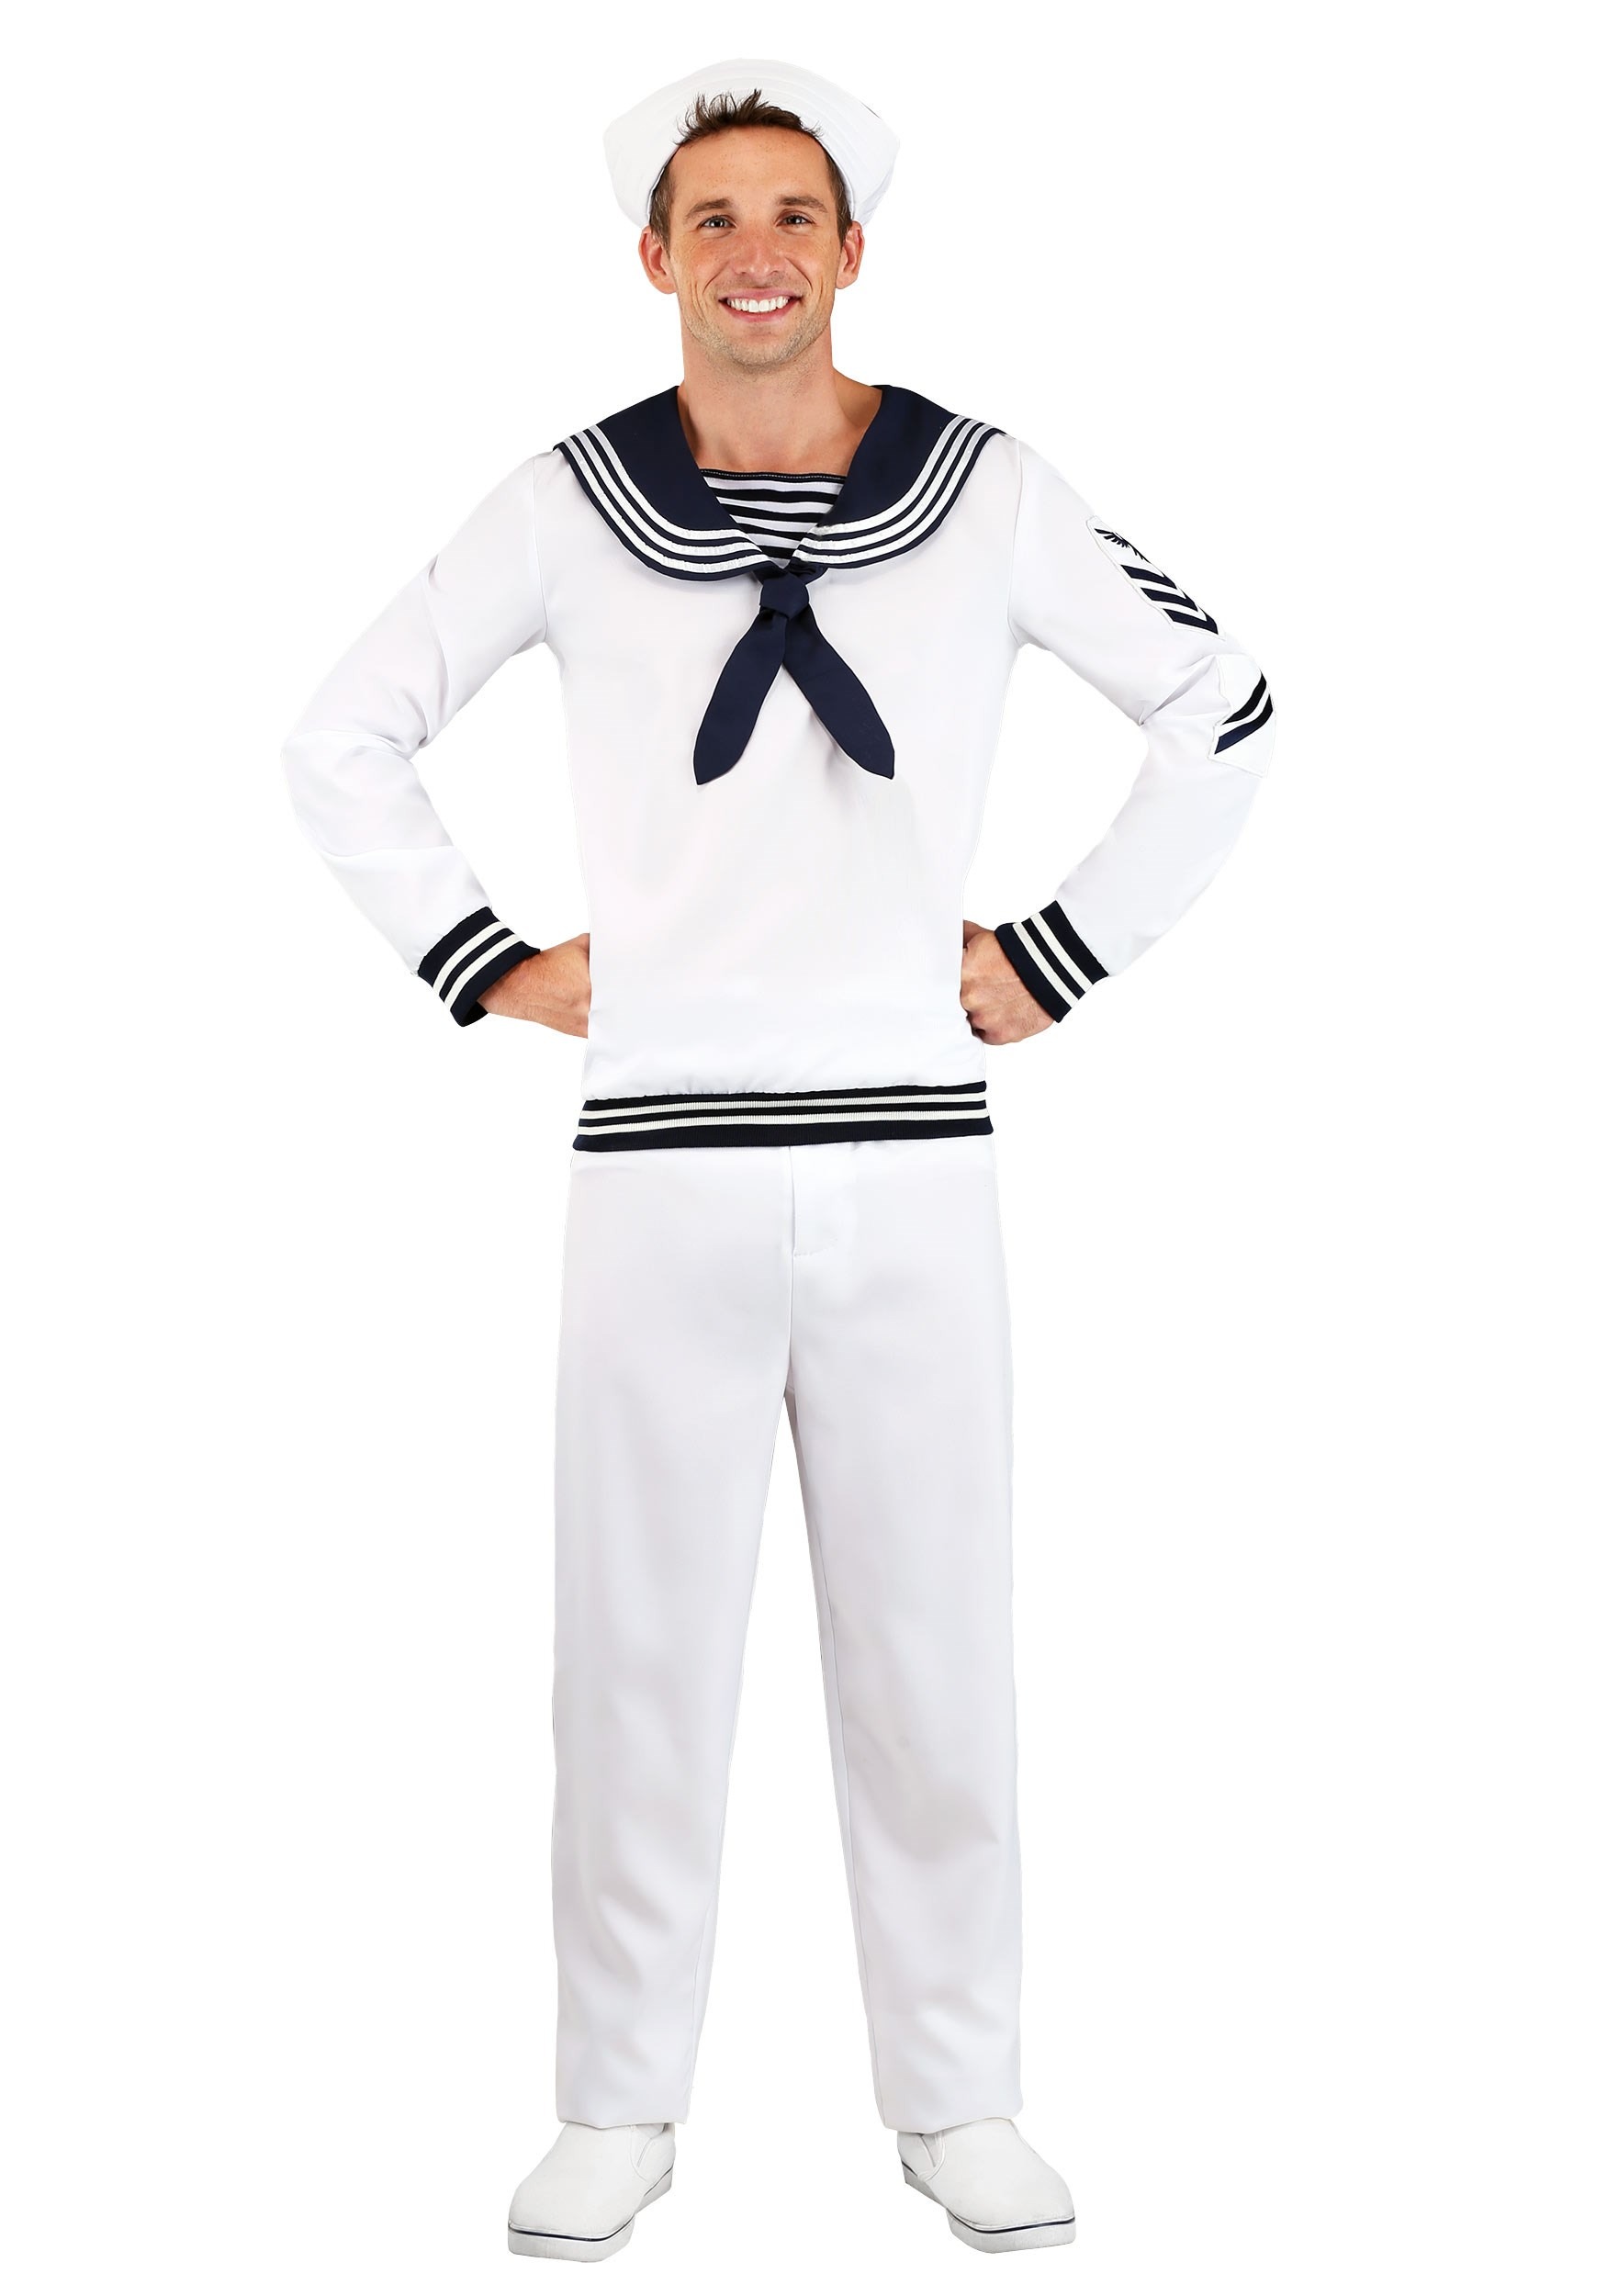 Deckhand Sailor Costume Men